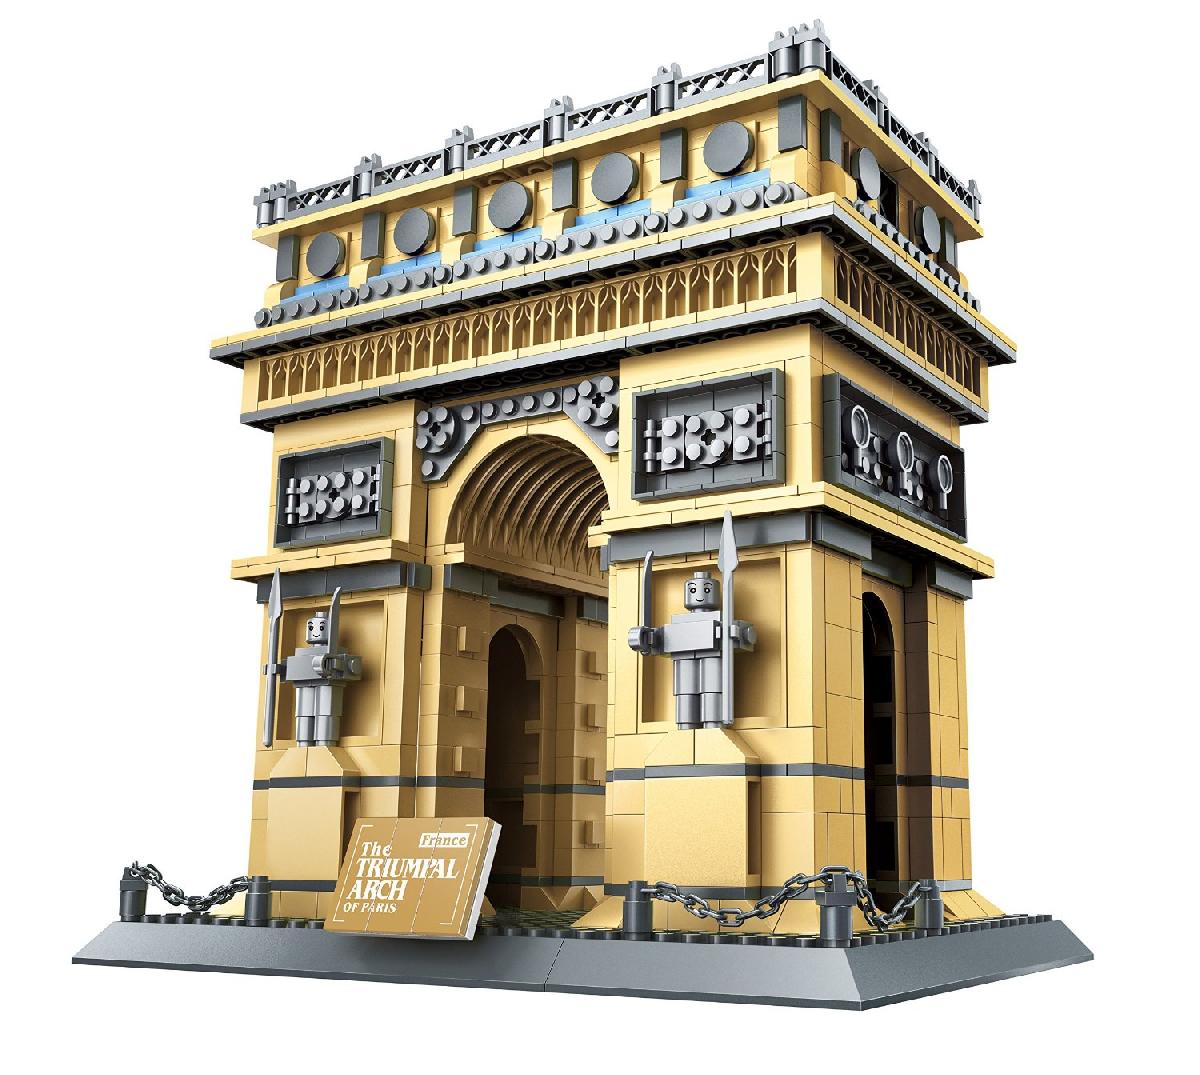 The Triumphal Arch of Paris, 1401 pieces